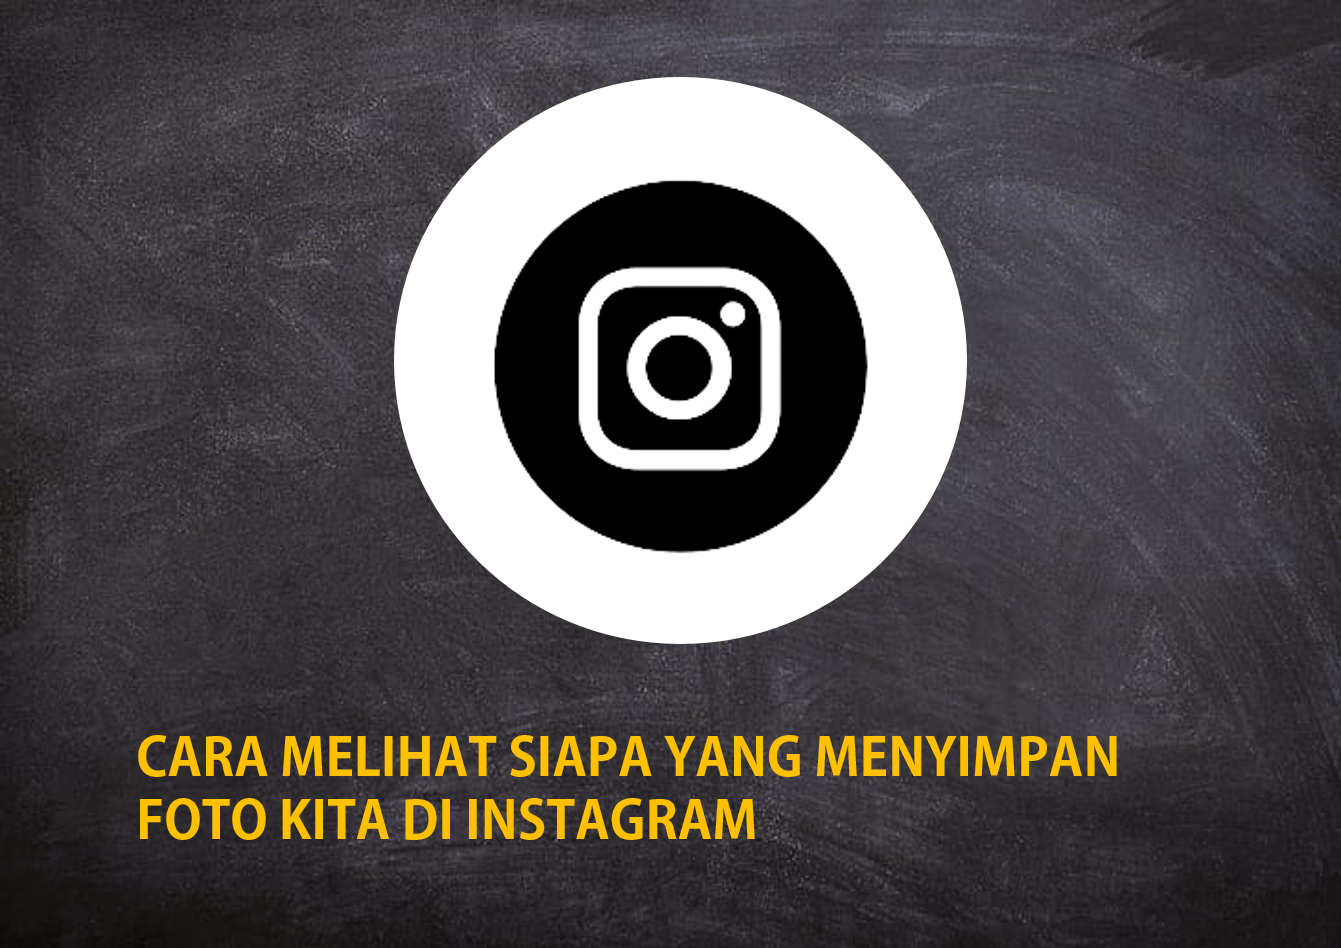 Cara Melihat Siapa Yang Menyimpan Foto Kita di Instagram